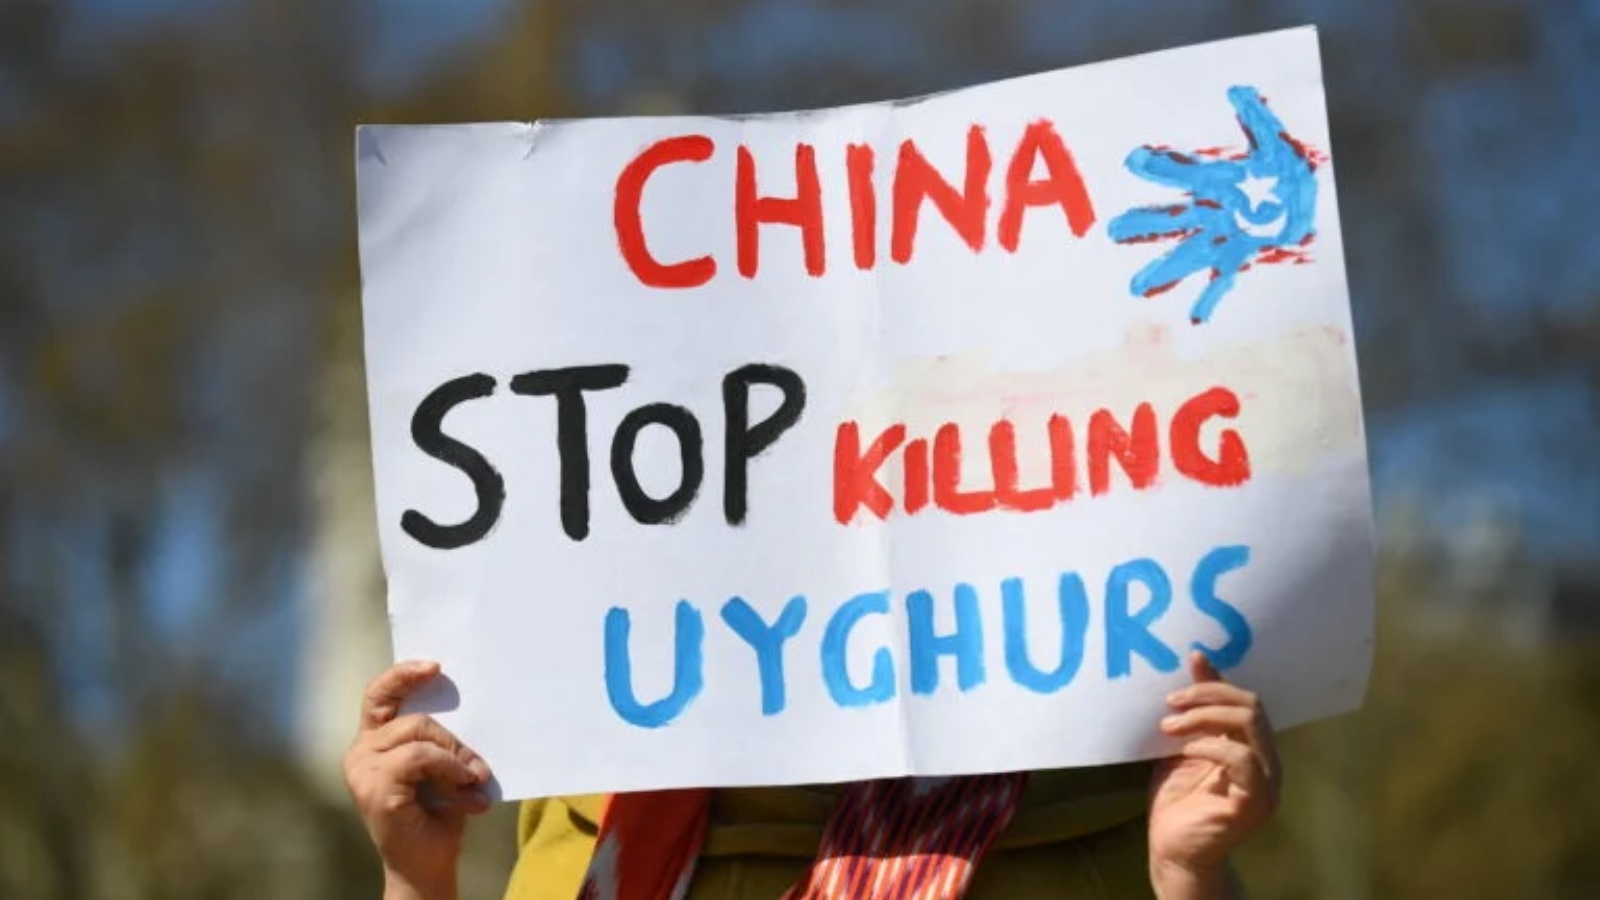 امرأة من مجتمع الأويغور تحمل لافتة أثناء مشاركتها في مظاهرة لدعوة البرلمان البريطاني للتصويت للاعتراف بالاضطهاد المزعوم لأقلية الأويغور المسلمة في الصين باعتباره إبادة جماعية وجرائم ضد الإنسانية في لندن في 22 أبريل 2021